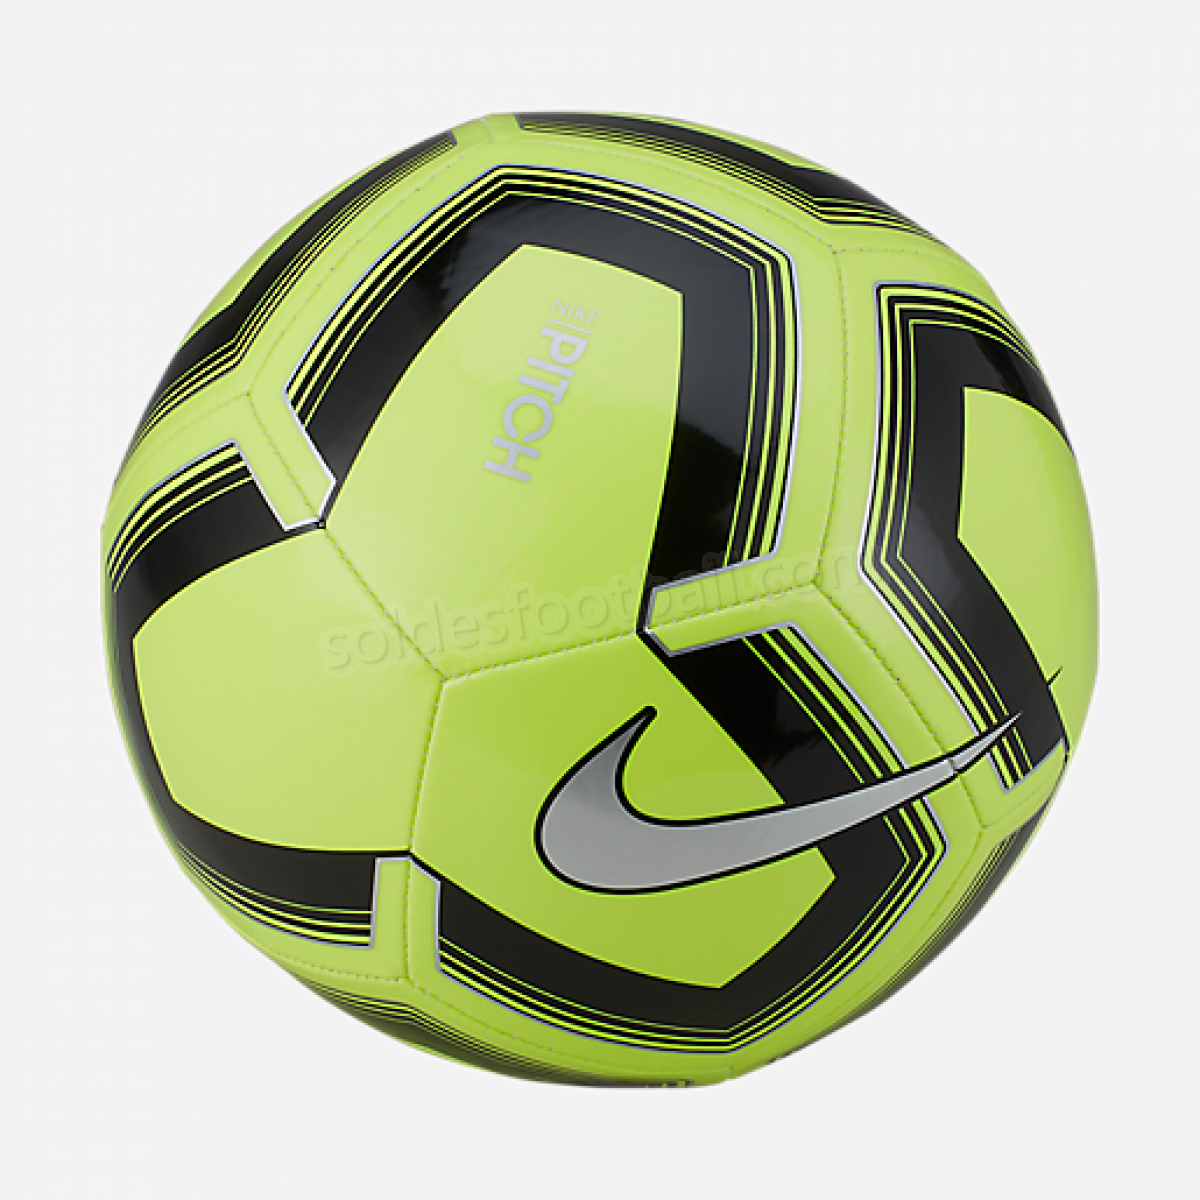 Ballon de football PITCH-NIKE en solde - Ballon de football PITCH-NIKE en solde